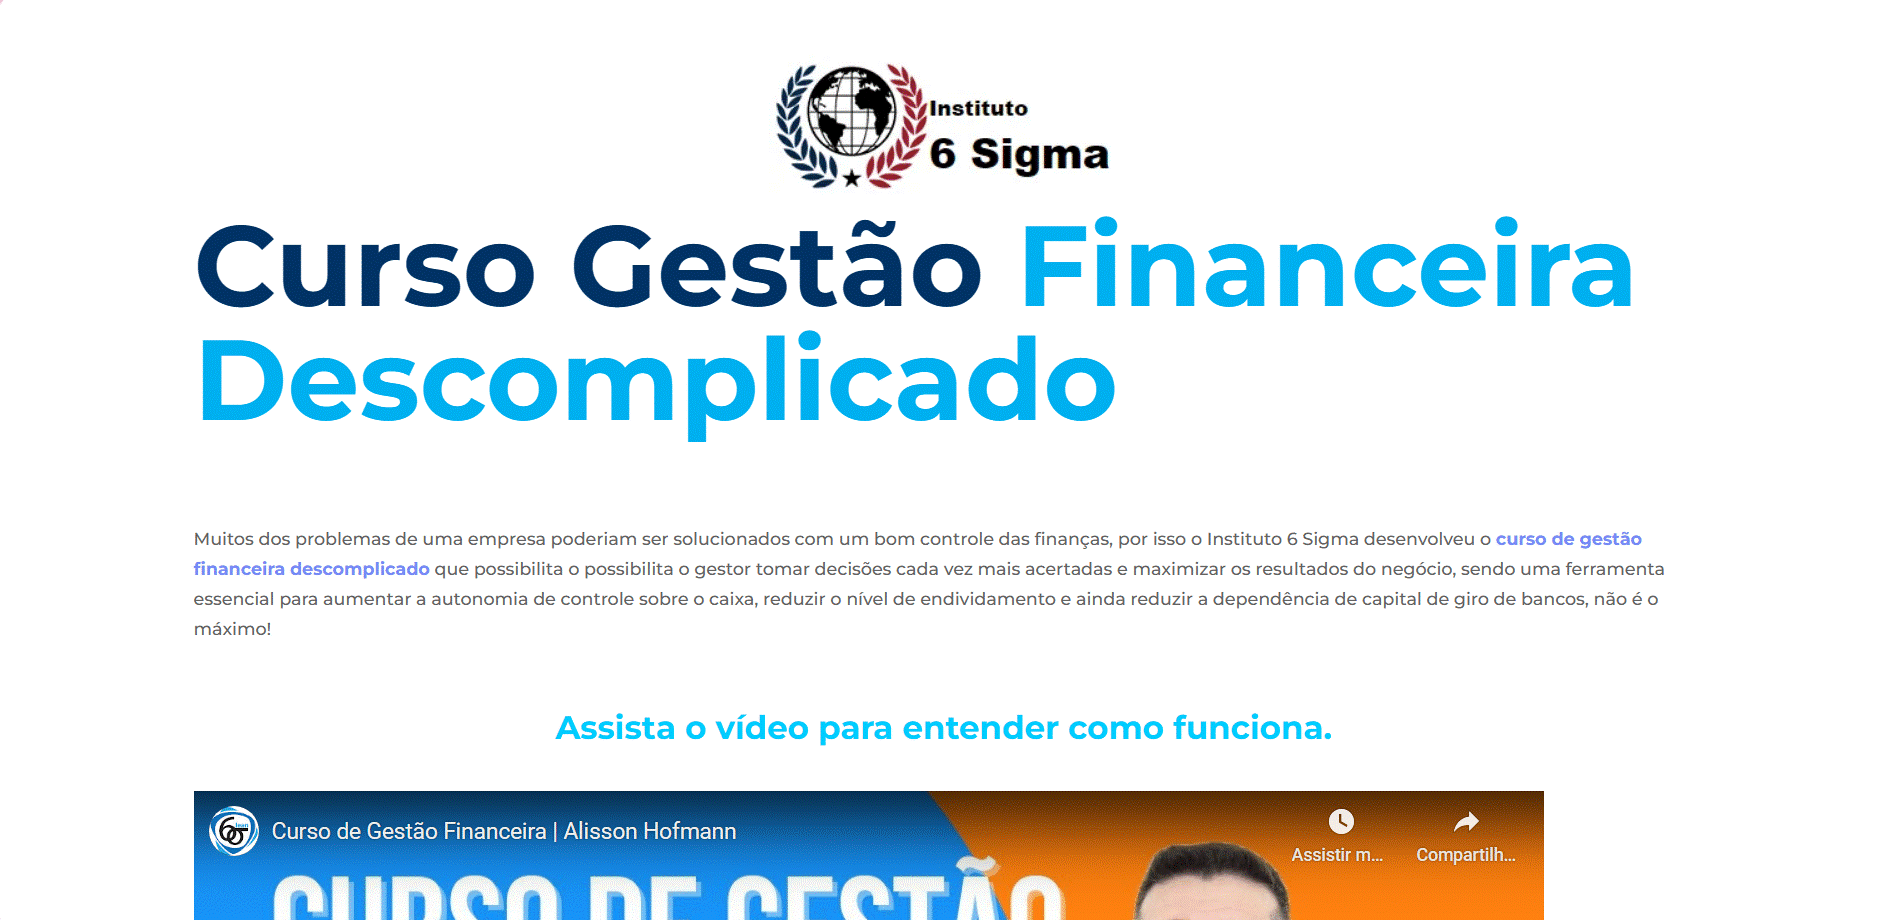 Curso Gestão Financeira Descomplicado – Instituto 6 Sigma